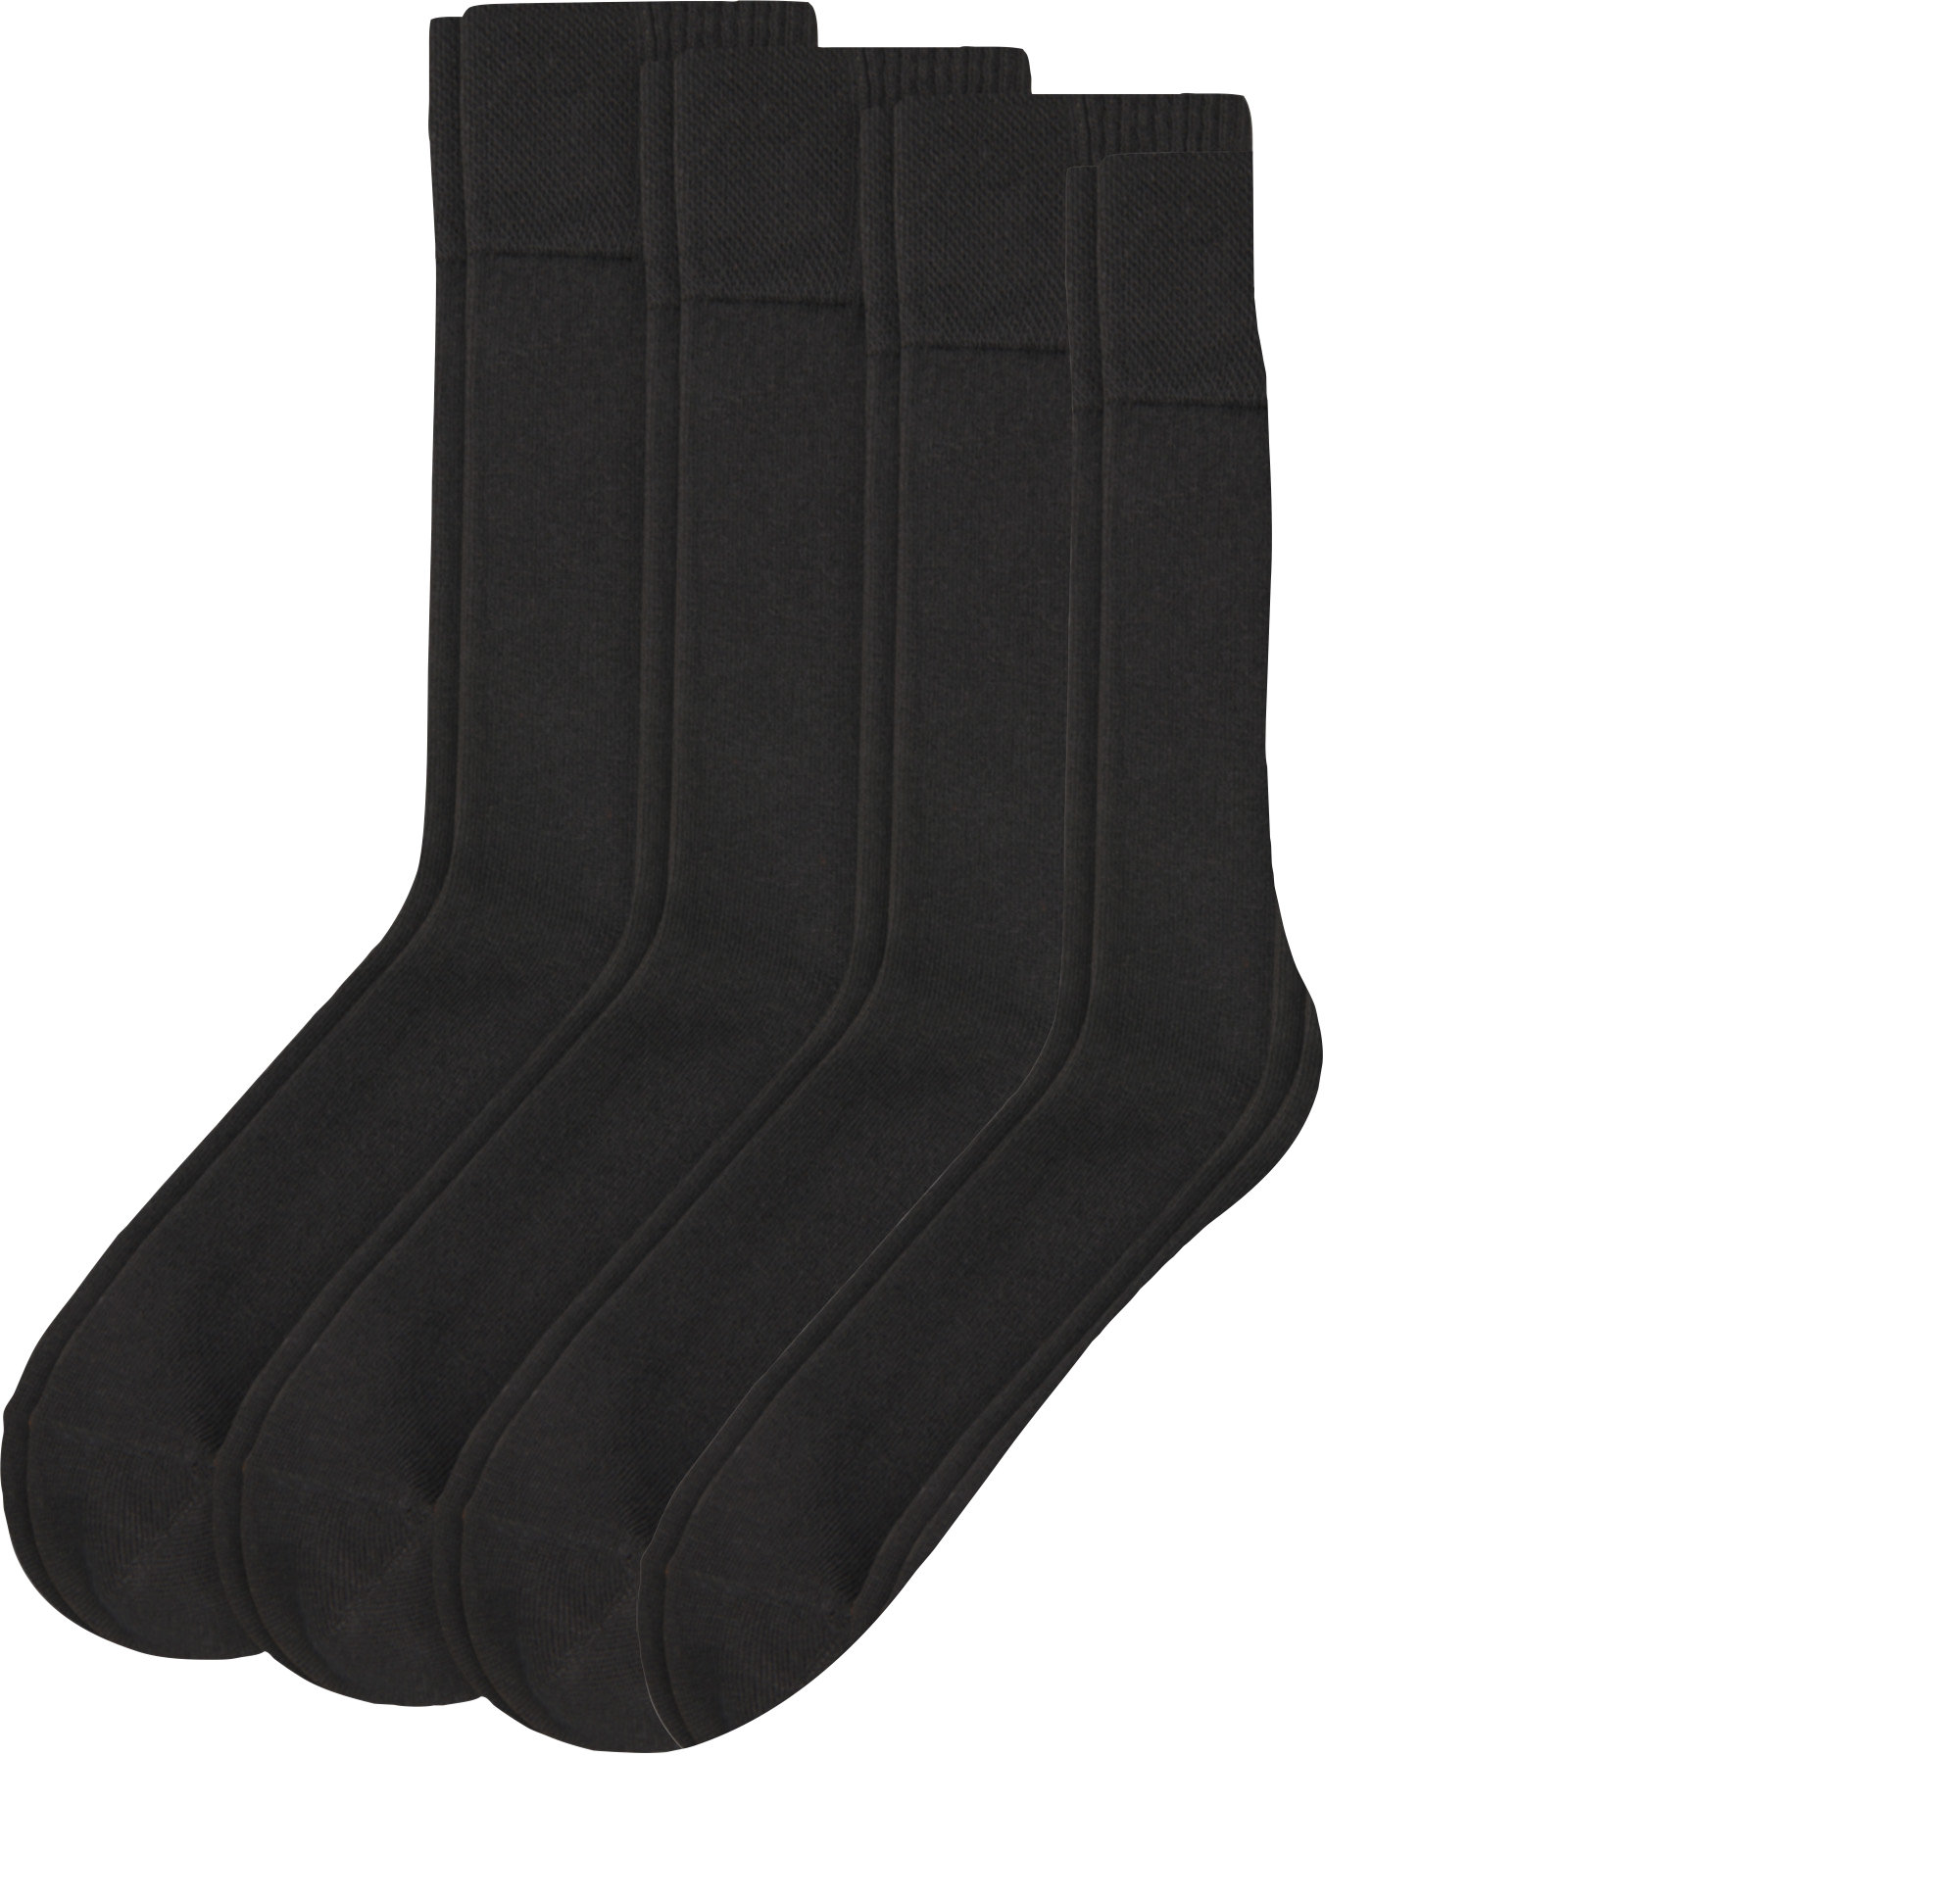 Skechers Herren-Socken 6 Paar | eBay